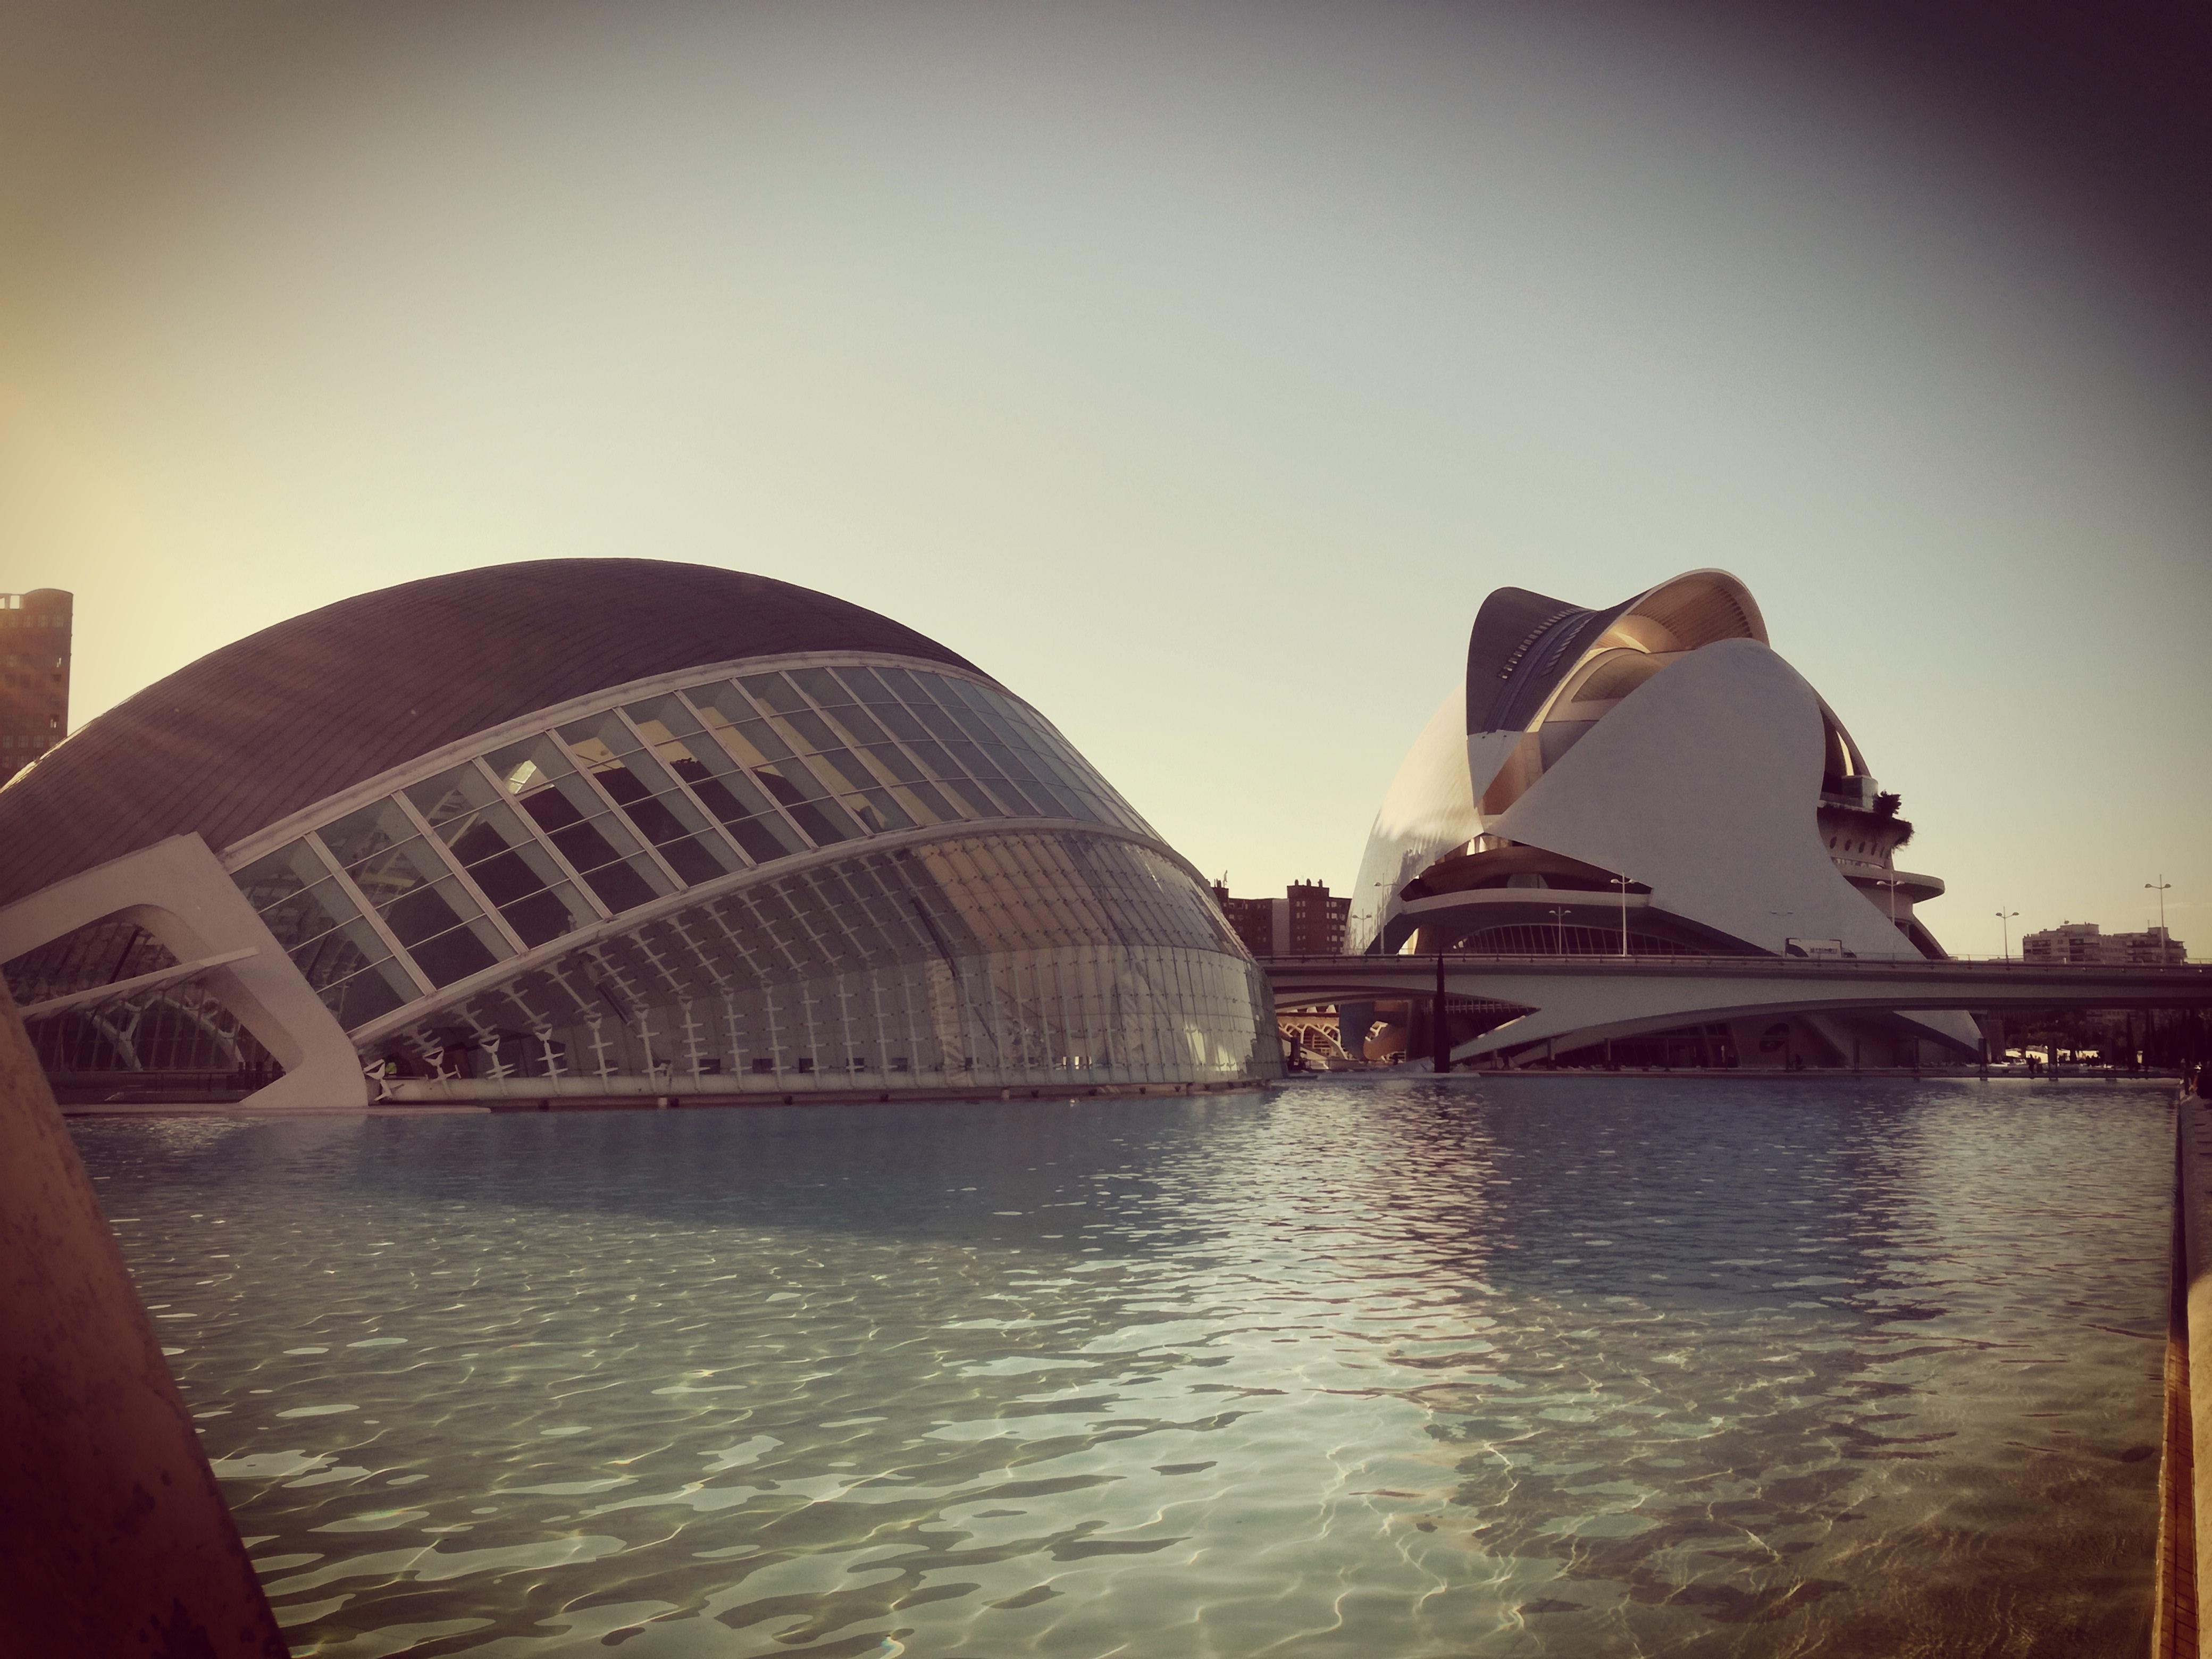 Ciutat de les Arts i les Ciències
#valencia #architecture #art #modern
#design #building #inspiration #travel